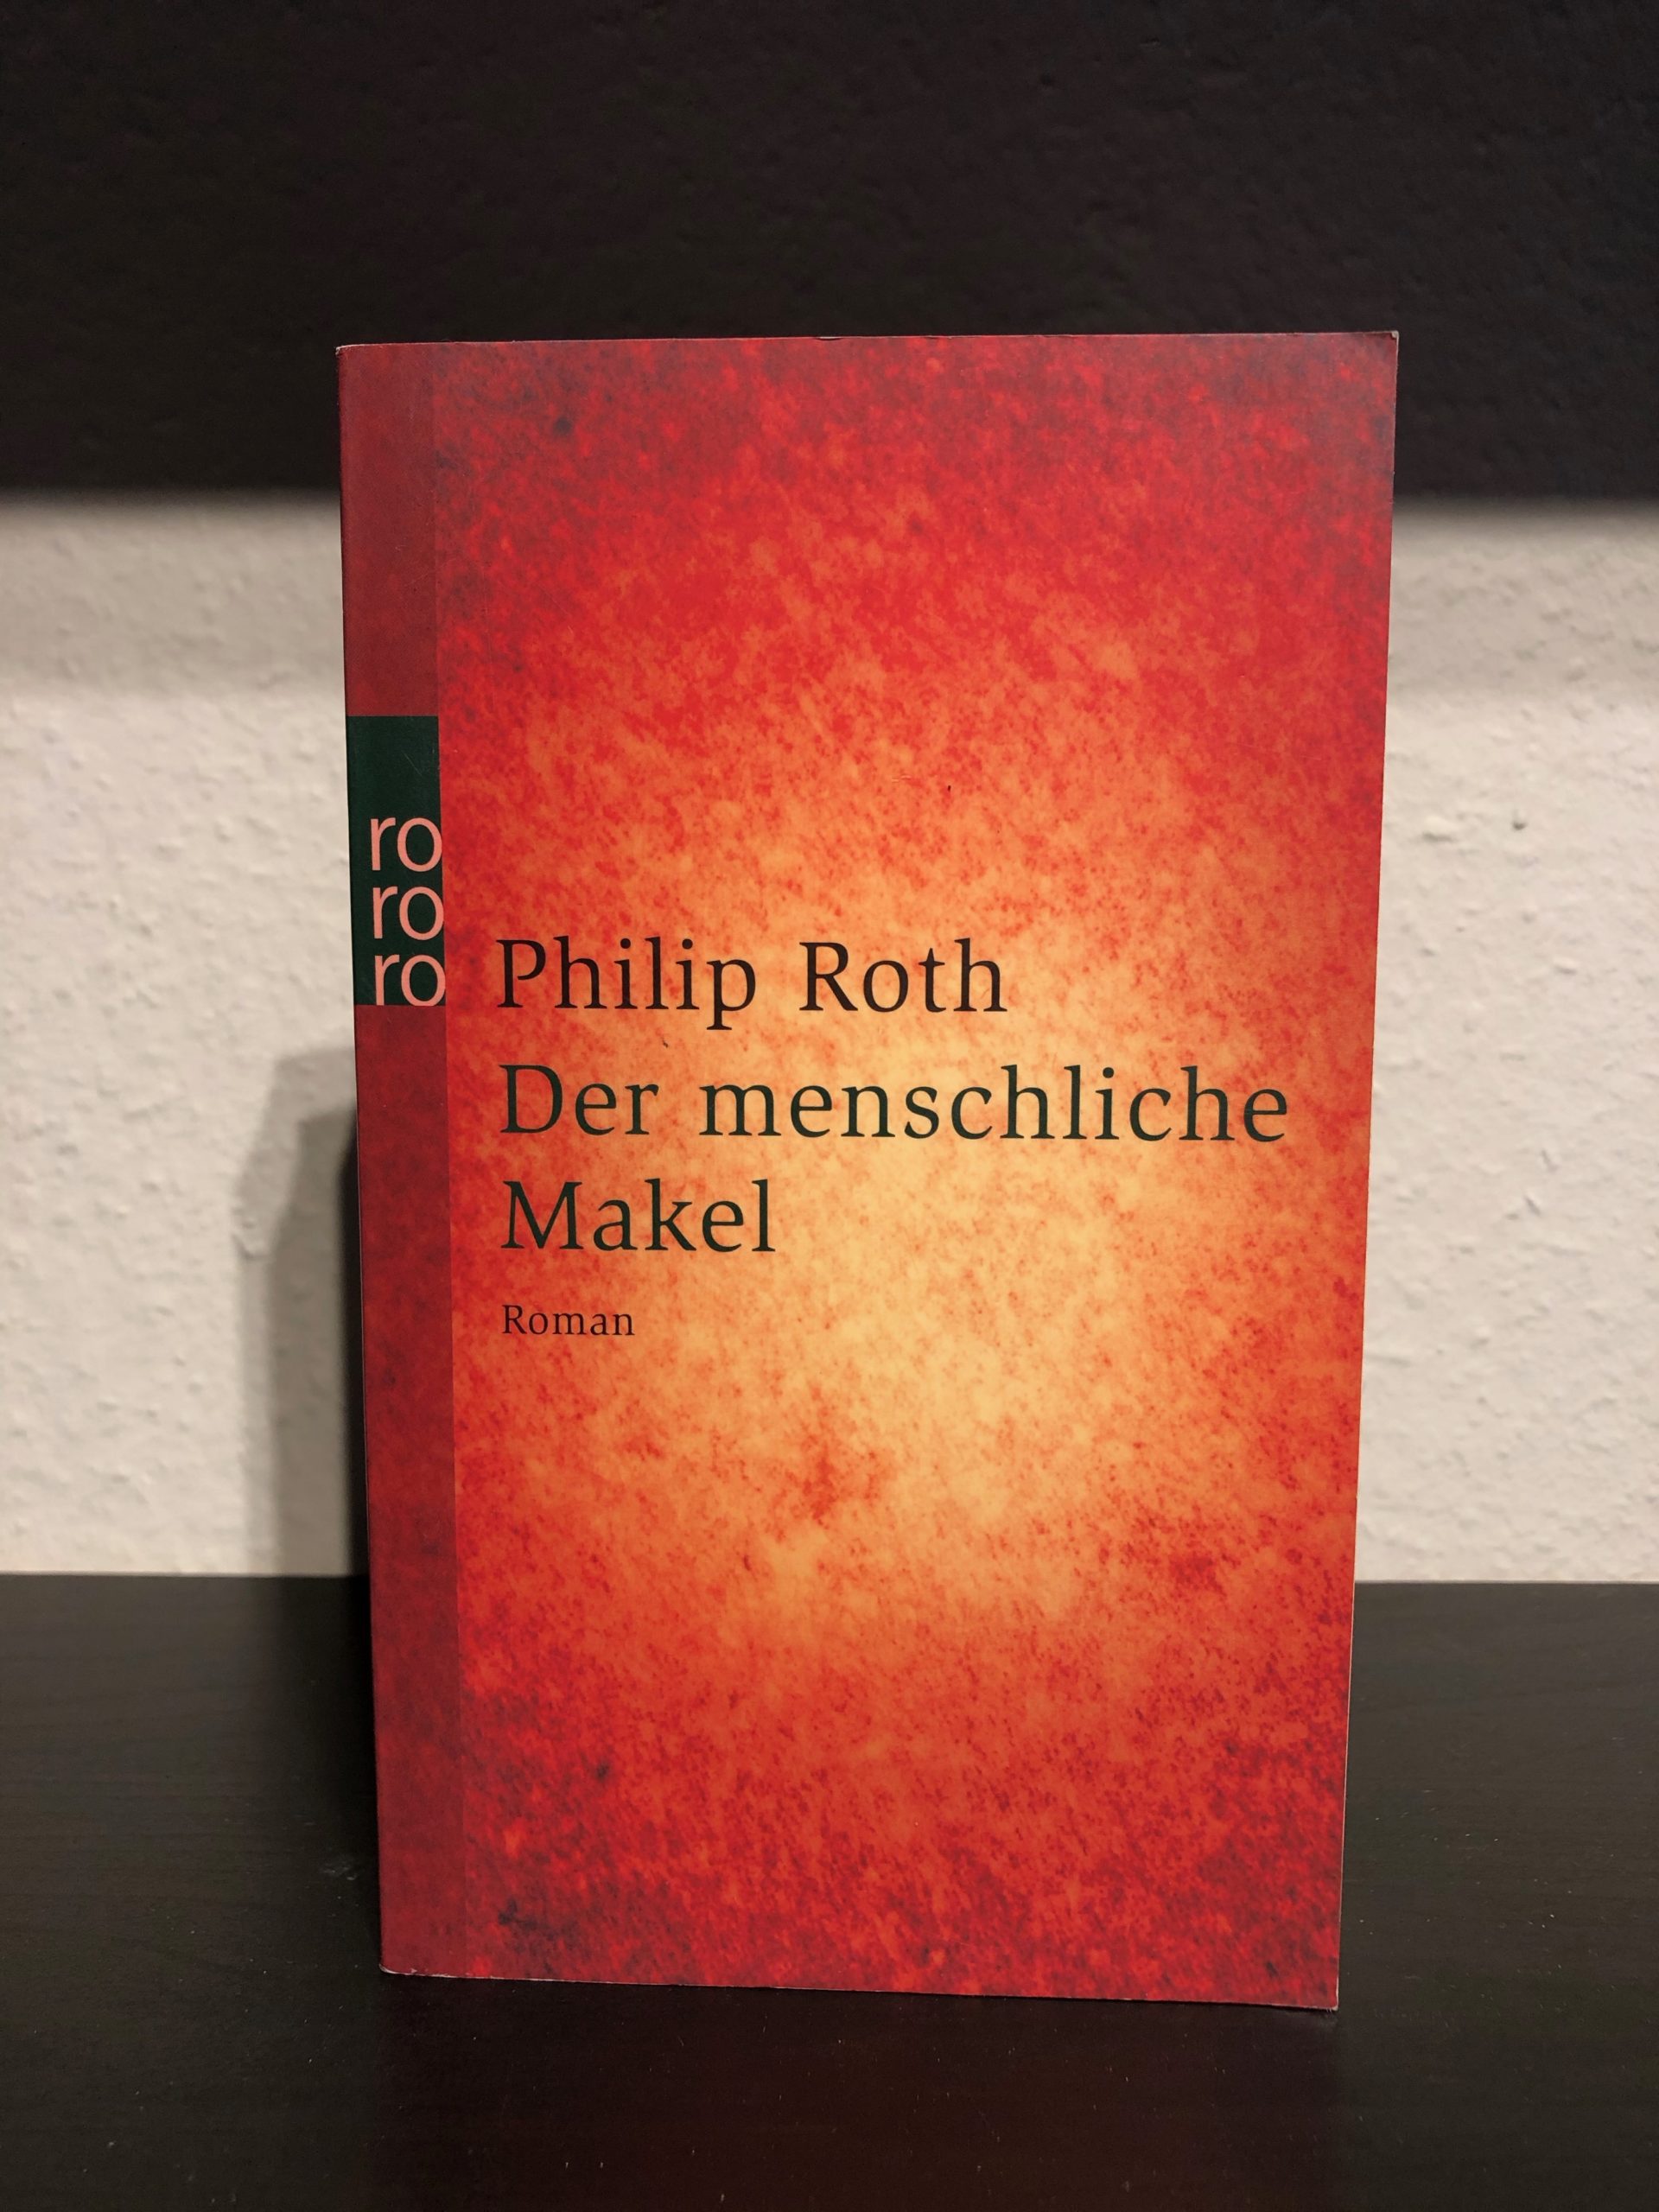 Der menschliche Makel - Philip Roth-image